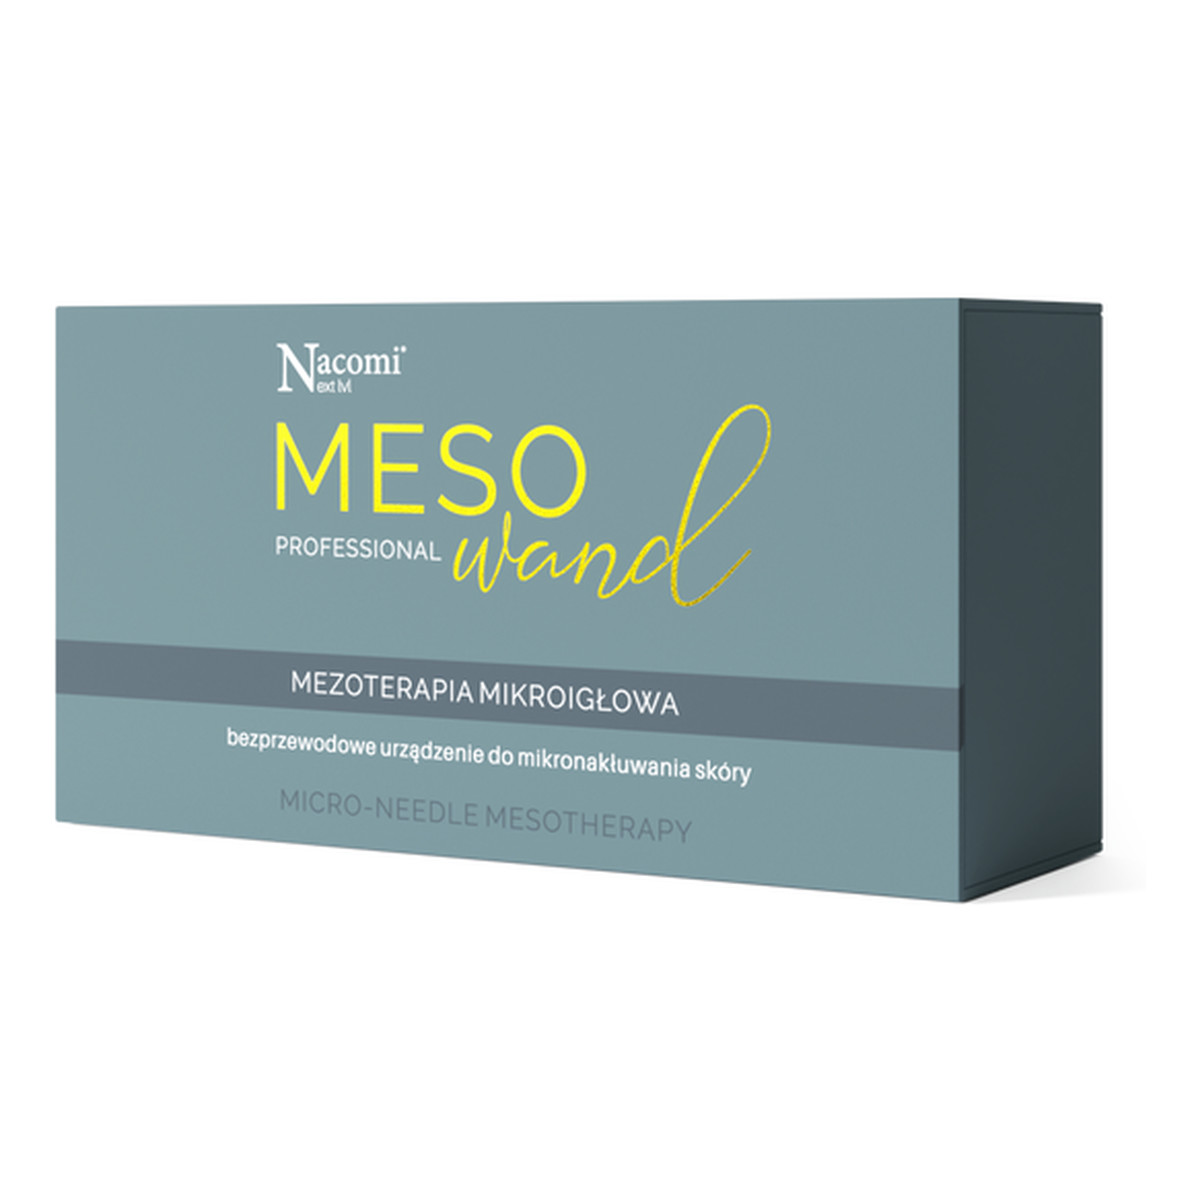 Nacomi MESO Wand Mezoterapia Mikroigłowa Urządzenie do mikronakłuwania skóry